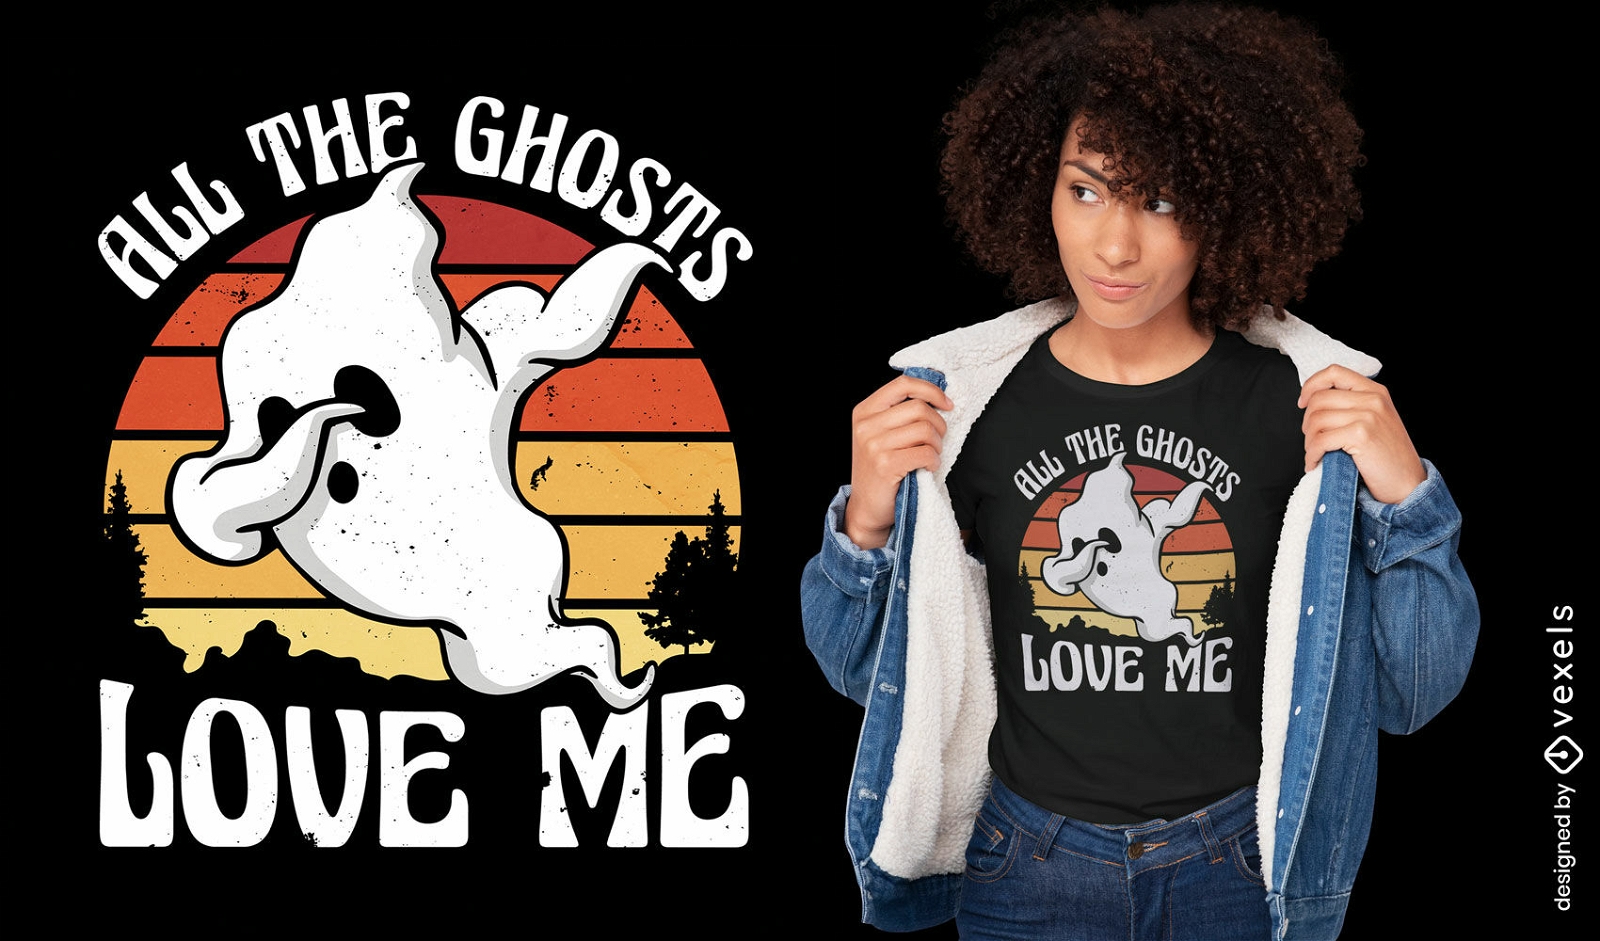 Todos los fantasmas me aman dise?o de camiseta.